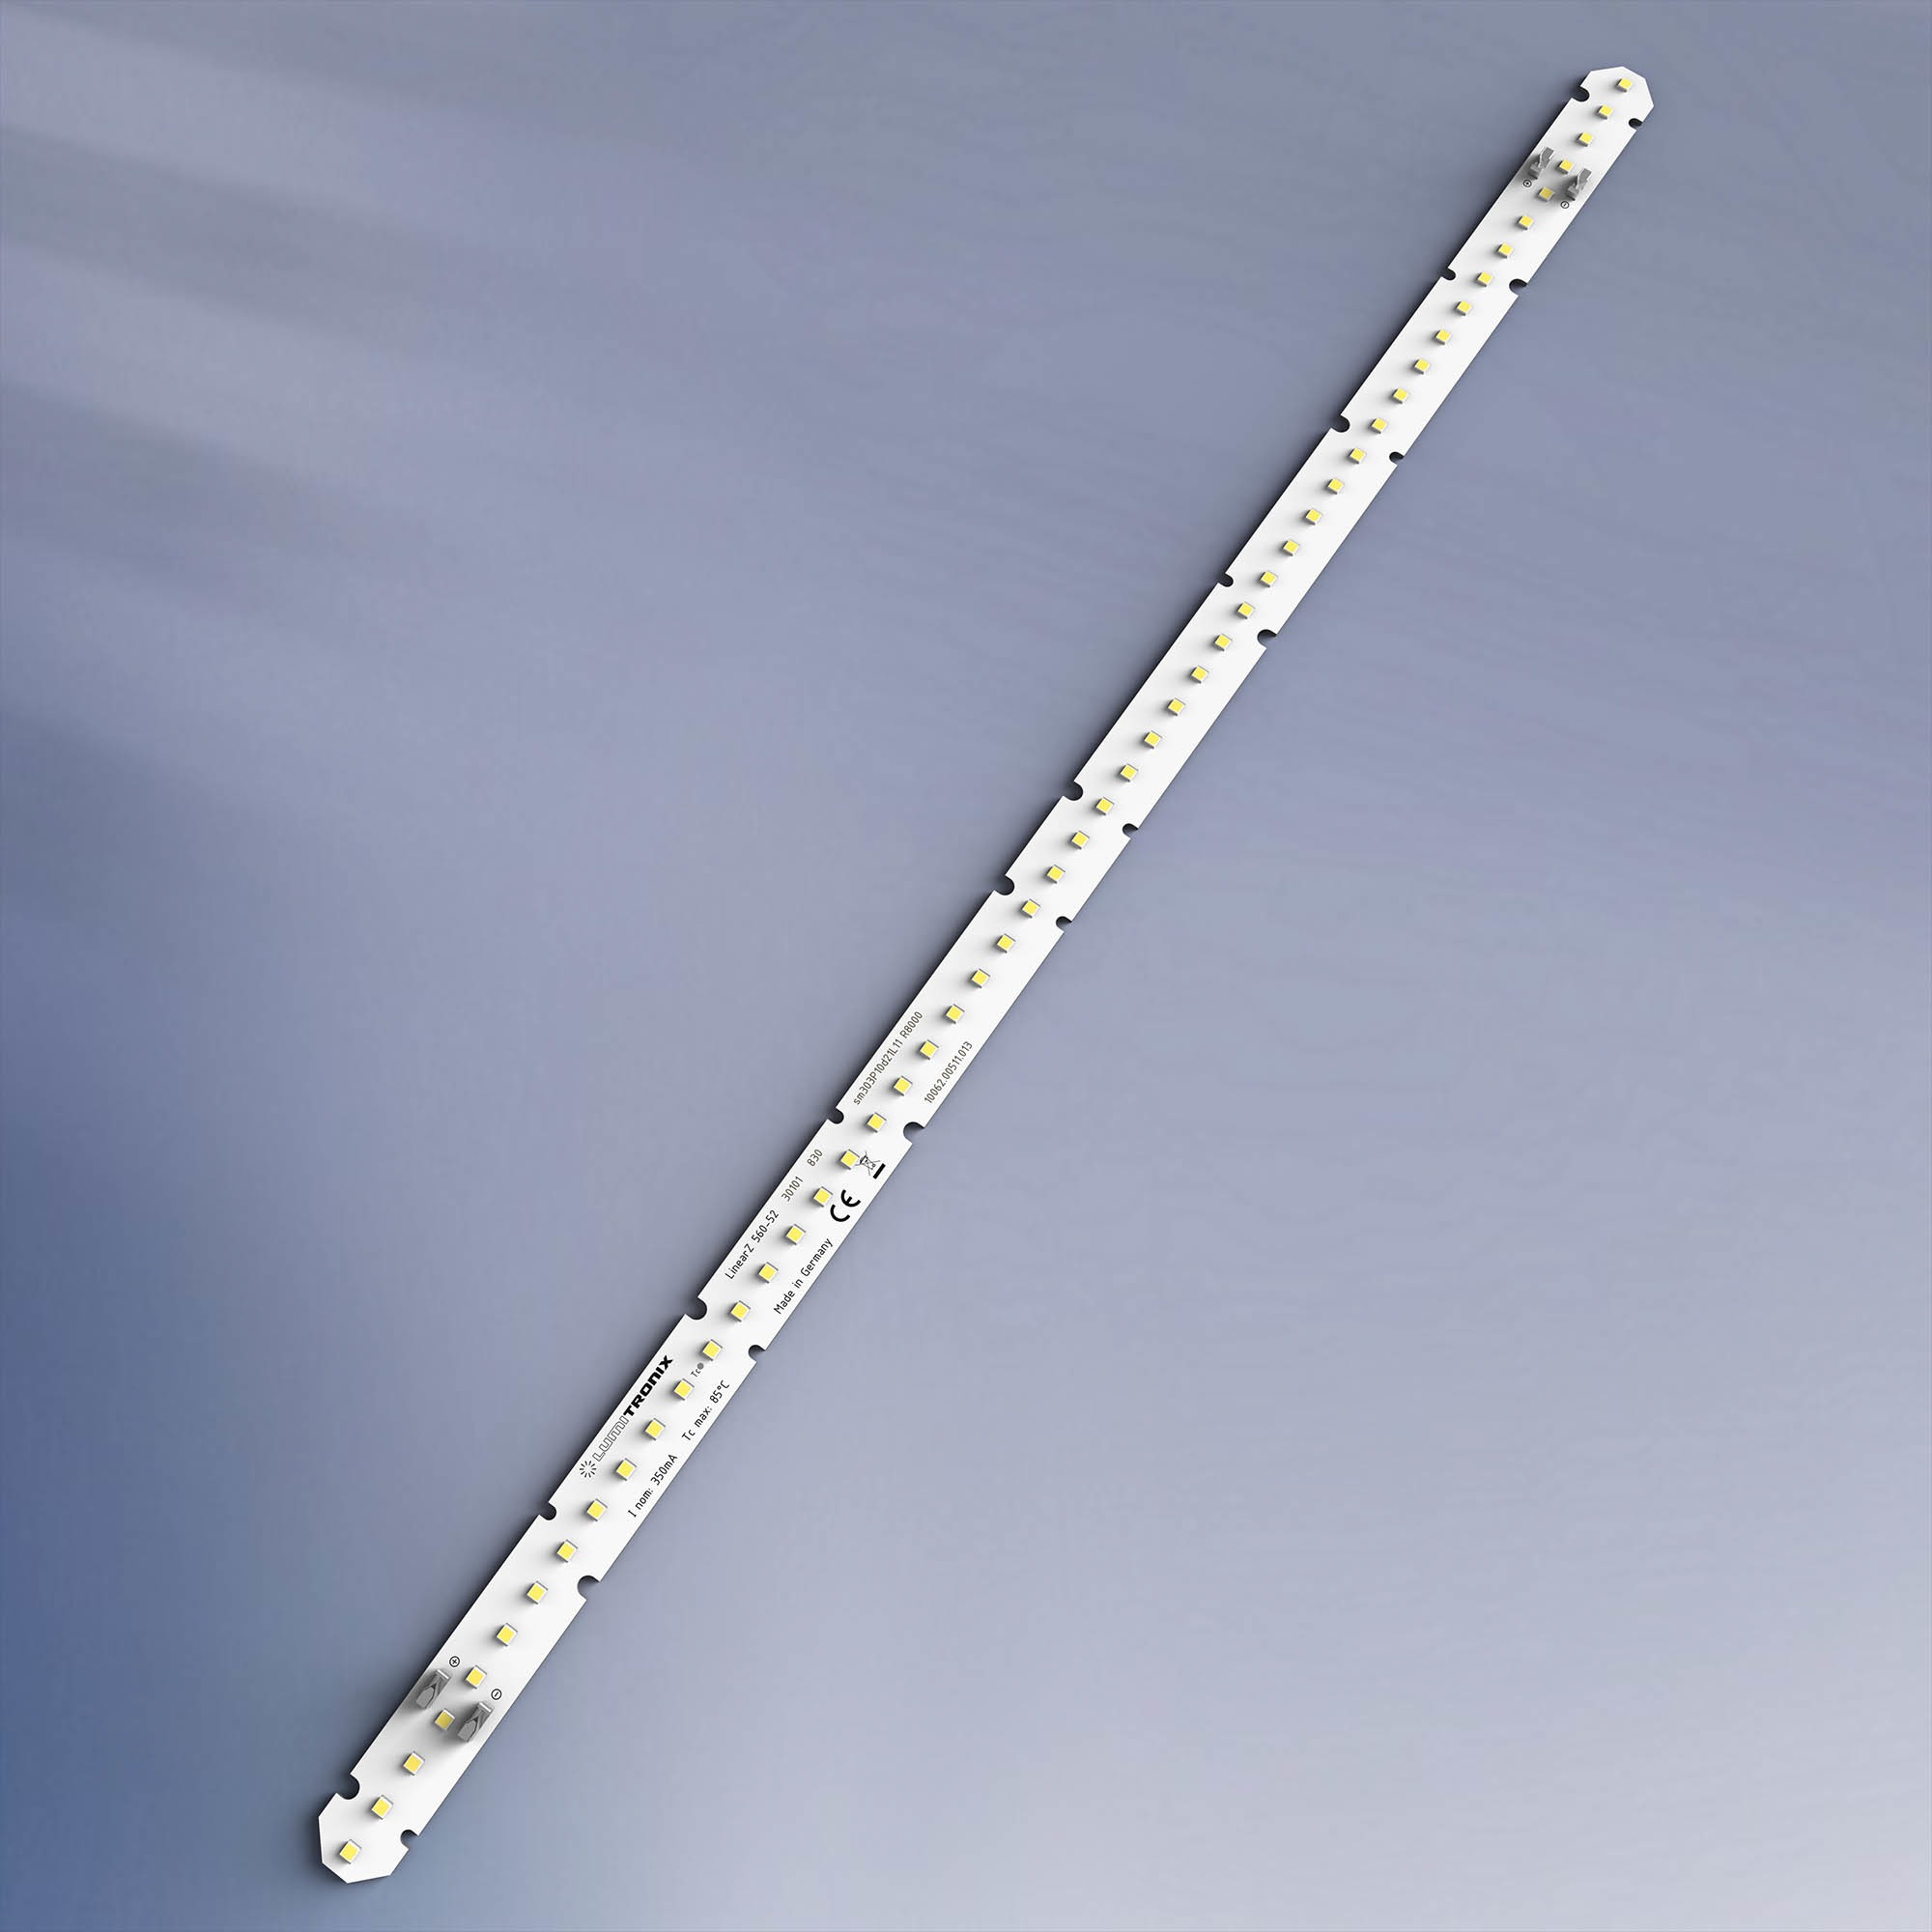 LumiBar-52-3098+ Toshiba-SSC LED Strip Sunlike CRI98 neutral white 5000K 1400lm 350mA 39.6V 52 LEDs 22.05in/56cm module (762lm/ft 7.6W/ft)